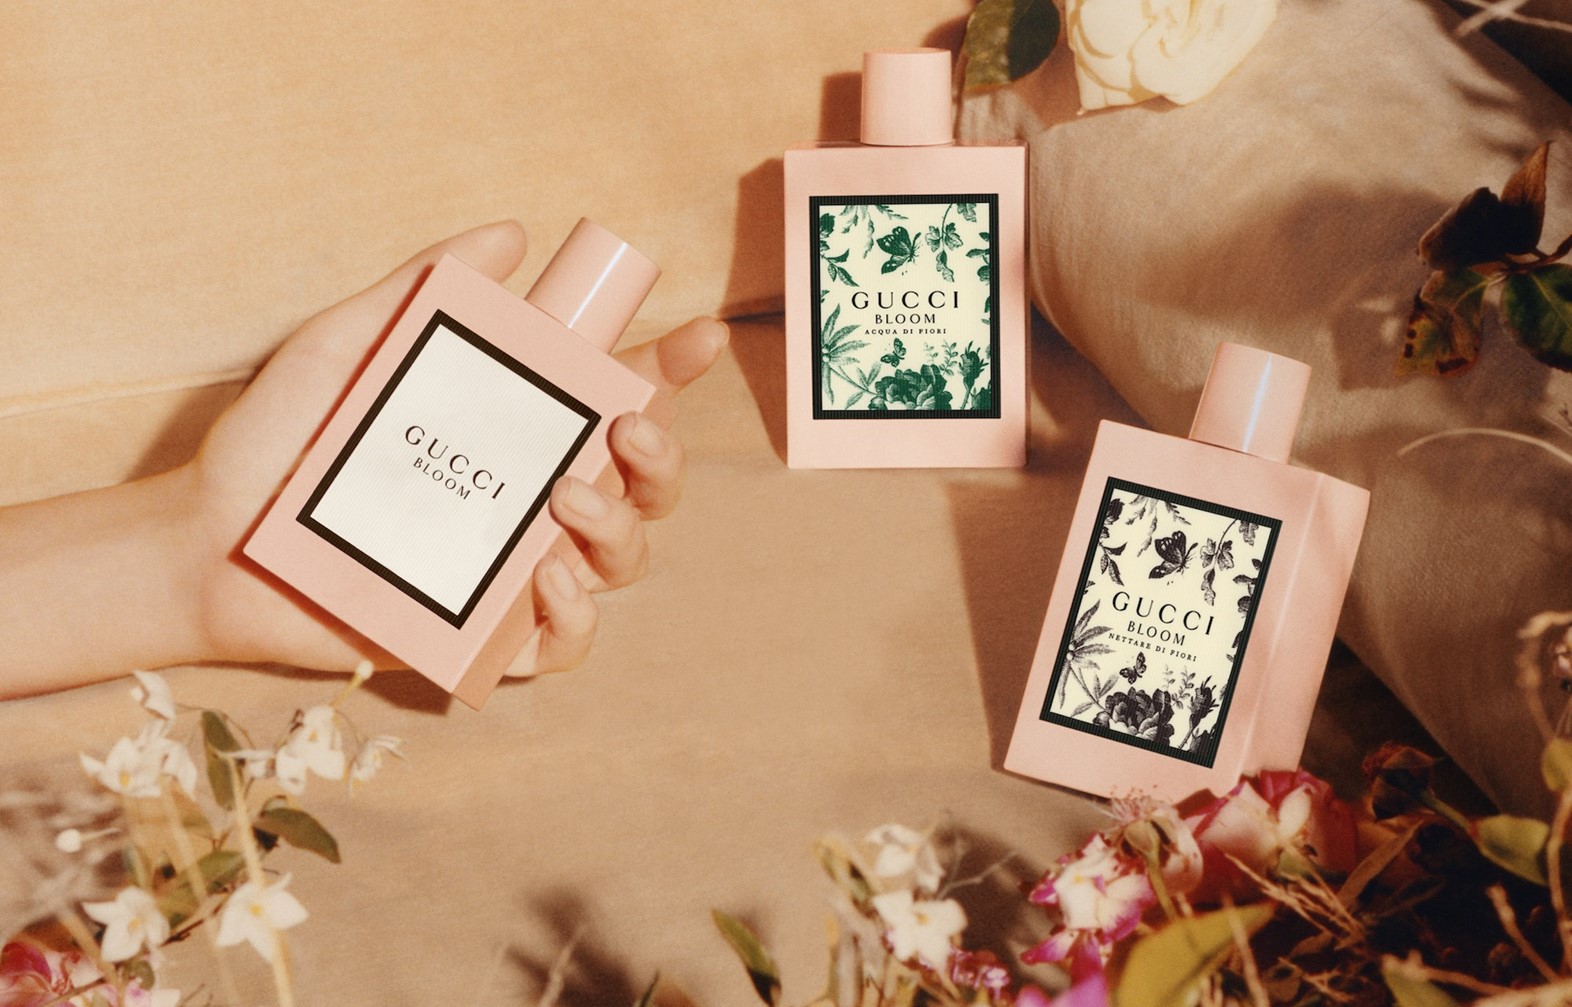 Gucci's Bloom Eau De Toilette Is The Cool New Fragrance That It